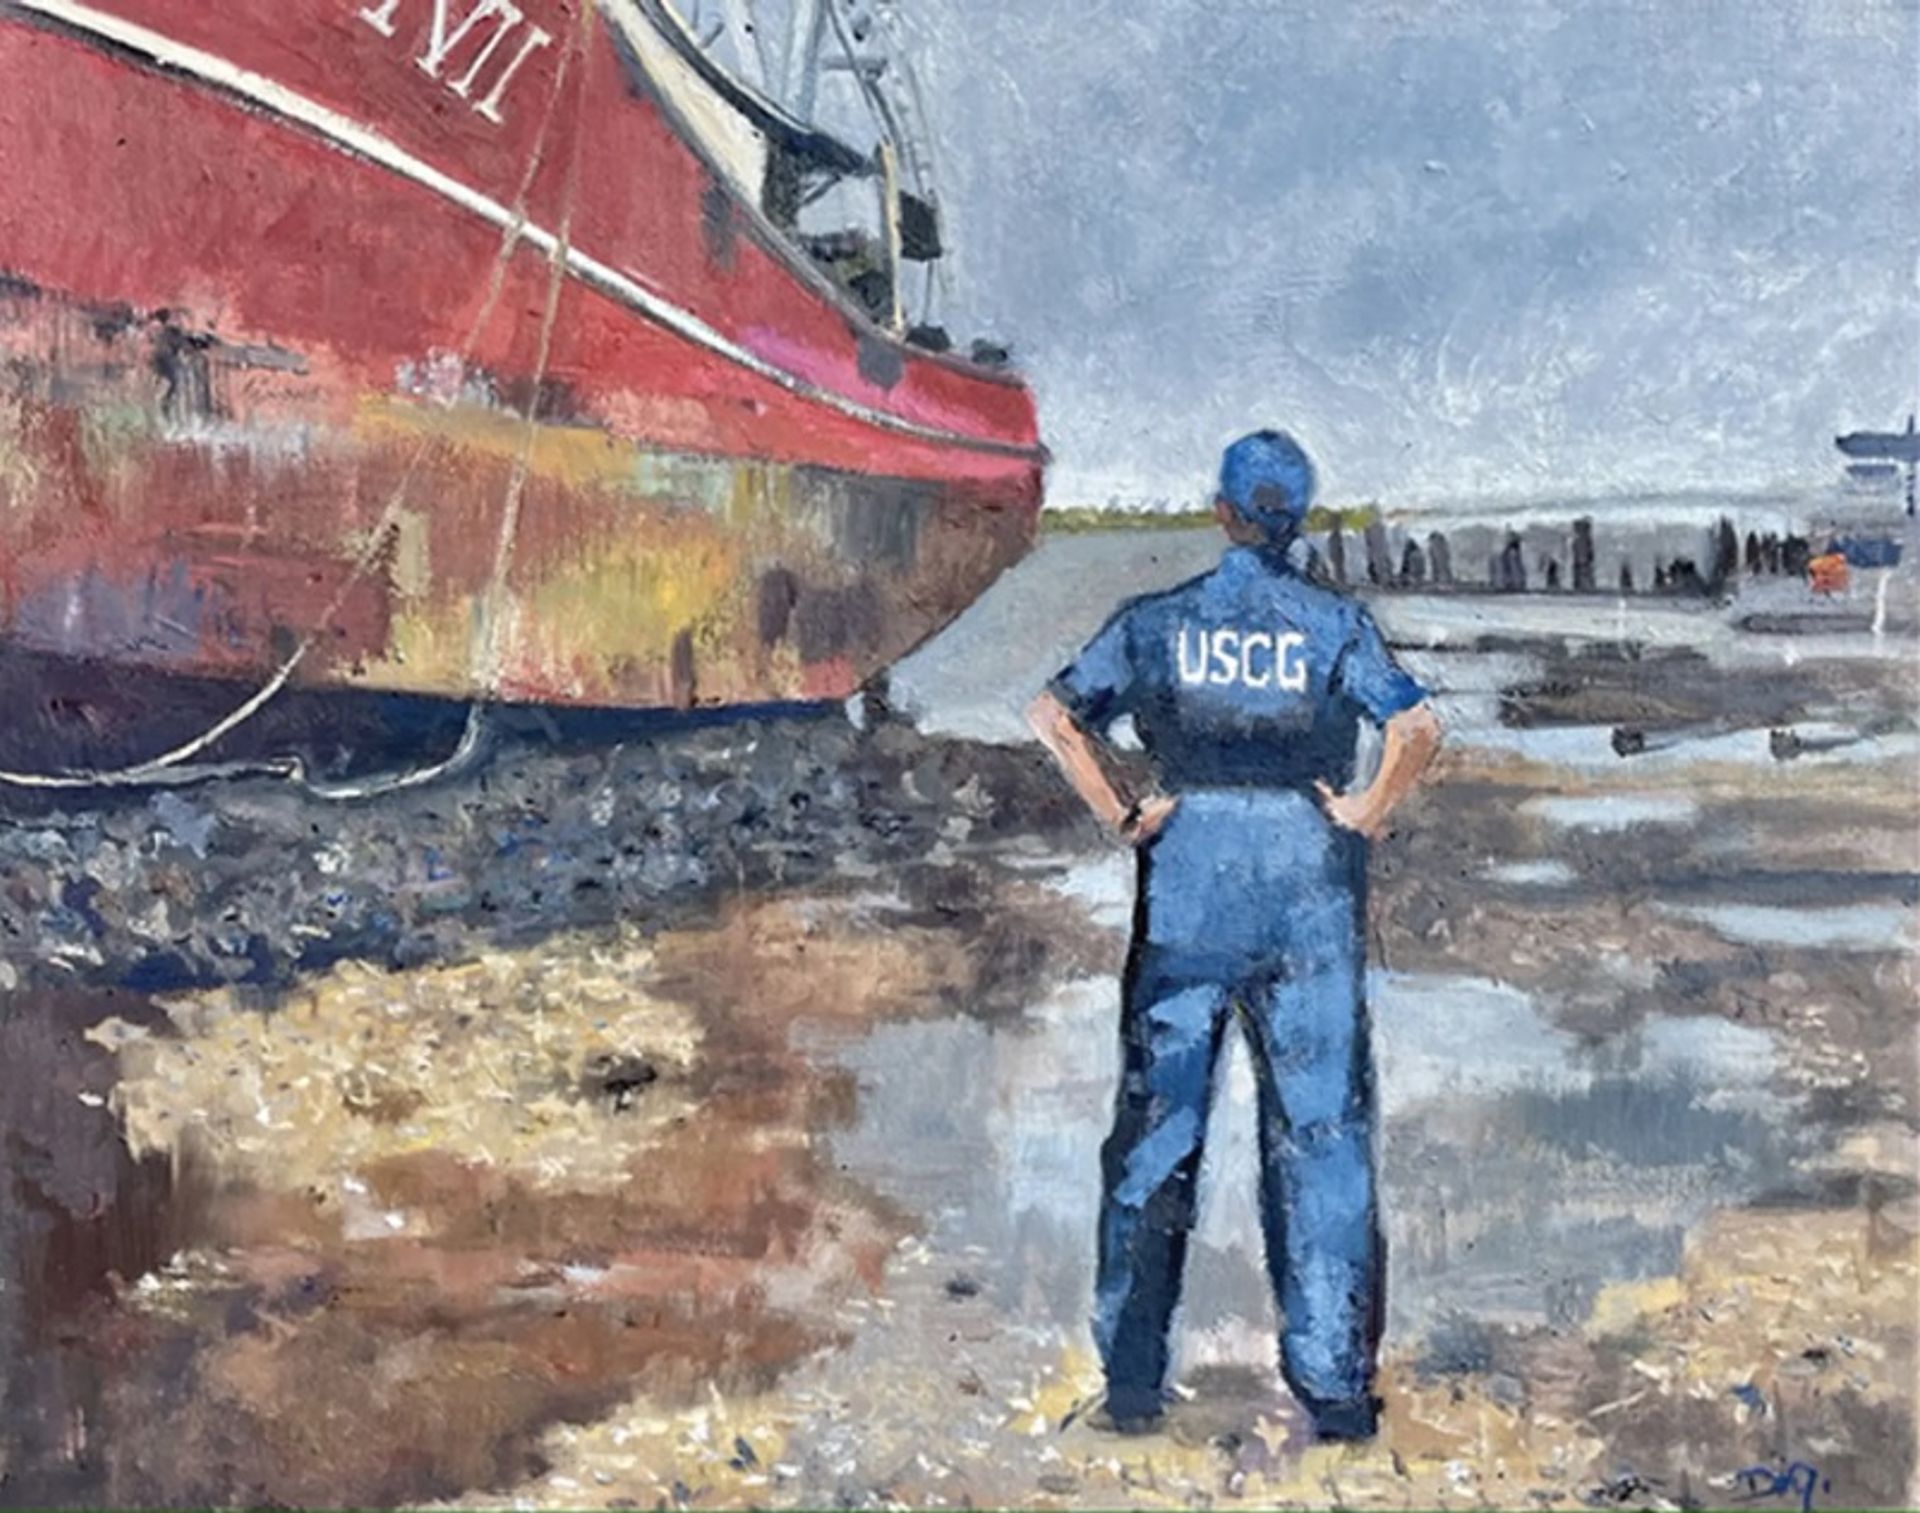 הציור Safety Hazard(2022) של איימי דיג'י, מתאר את הסיוע של אנשי משמר החופים לאחר שסופת הוריקן אידה פגעה בחוף המזרחי של ארה"ב. הציור הוצג בתערוכה שעלתה לאחרונה בניו יורק של עבודות מאוסף משמר החופים

באדיבות האמן